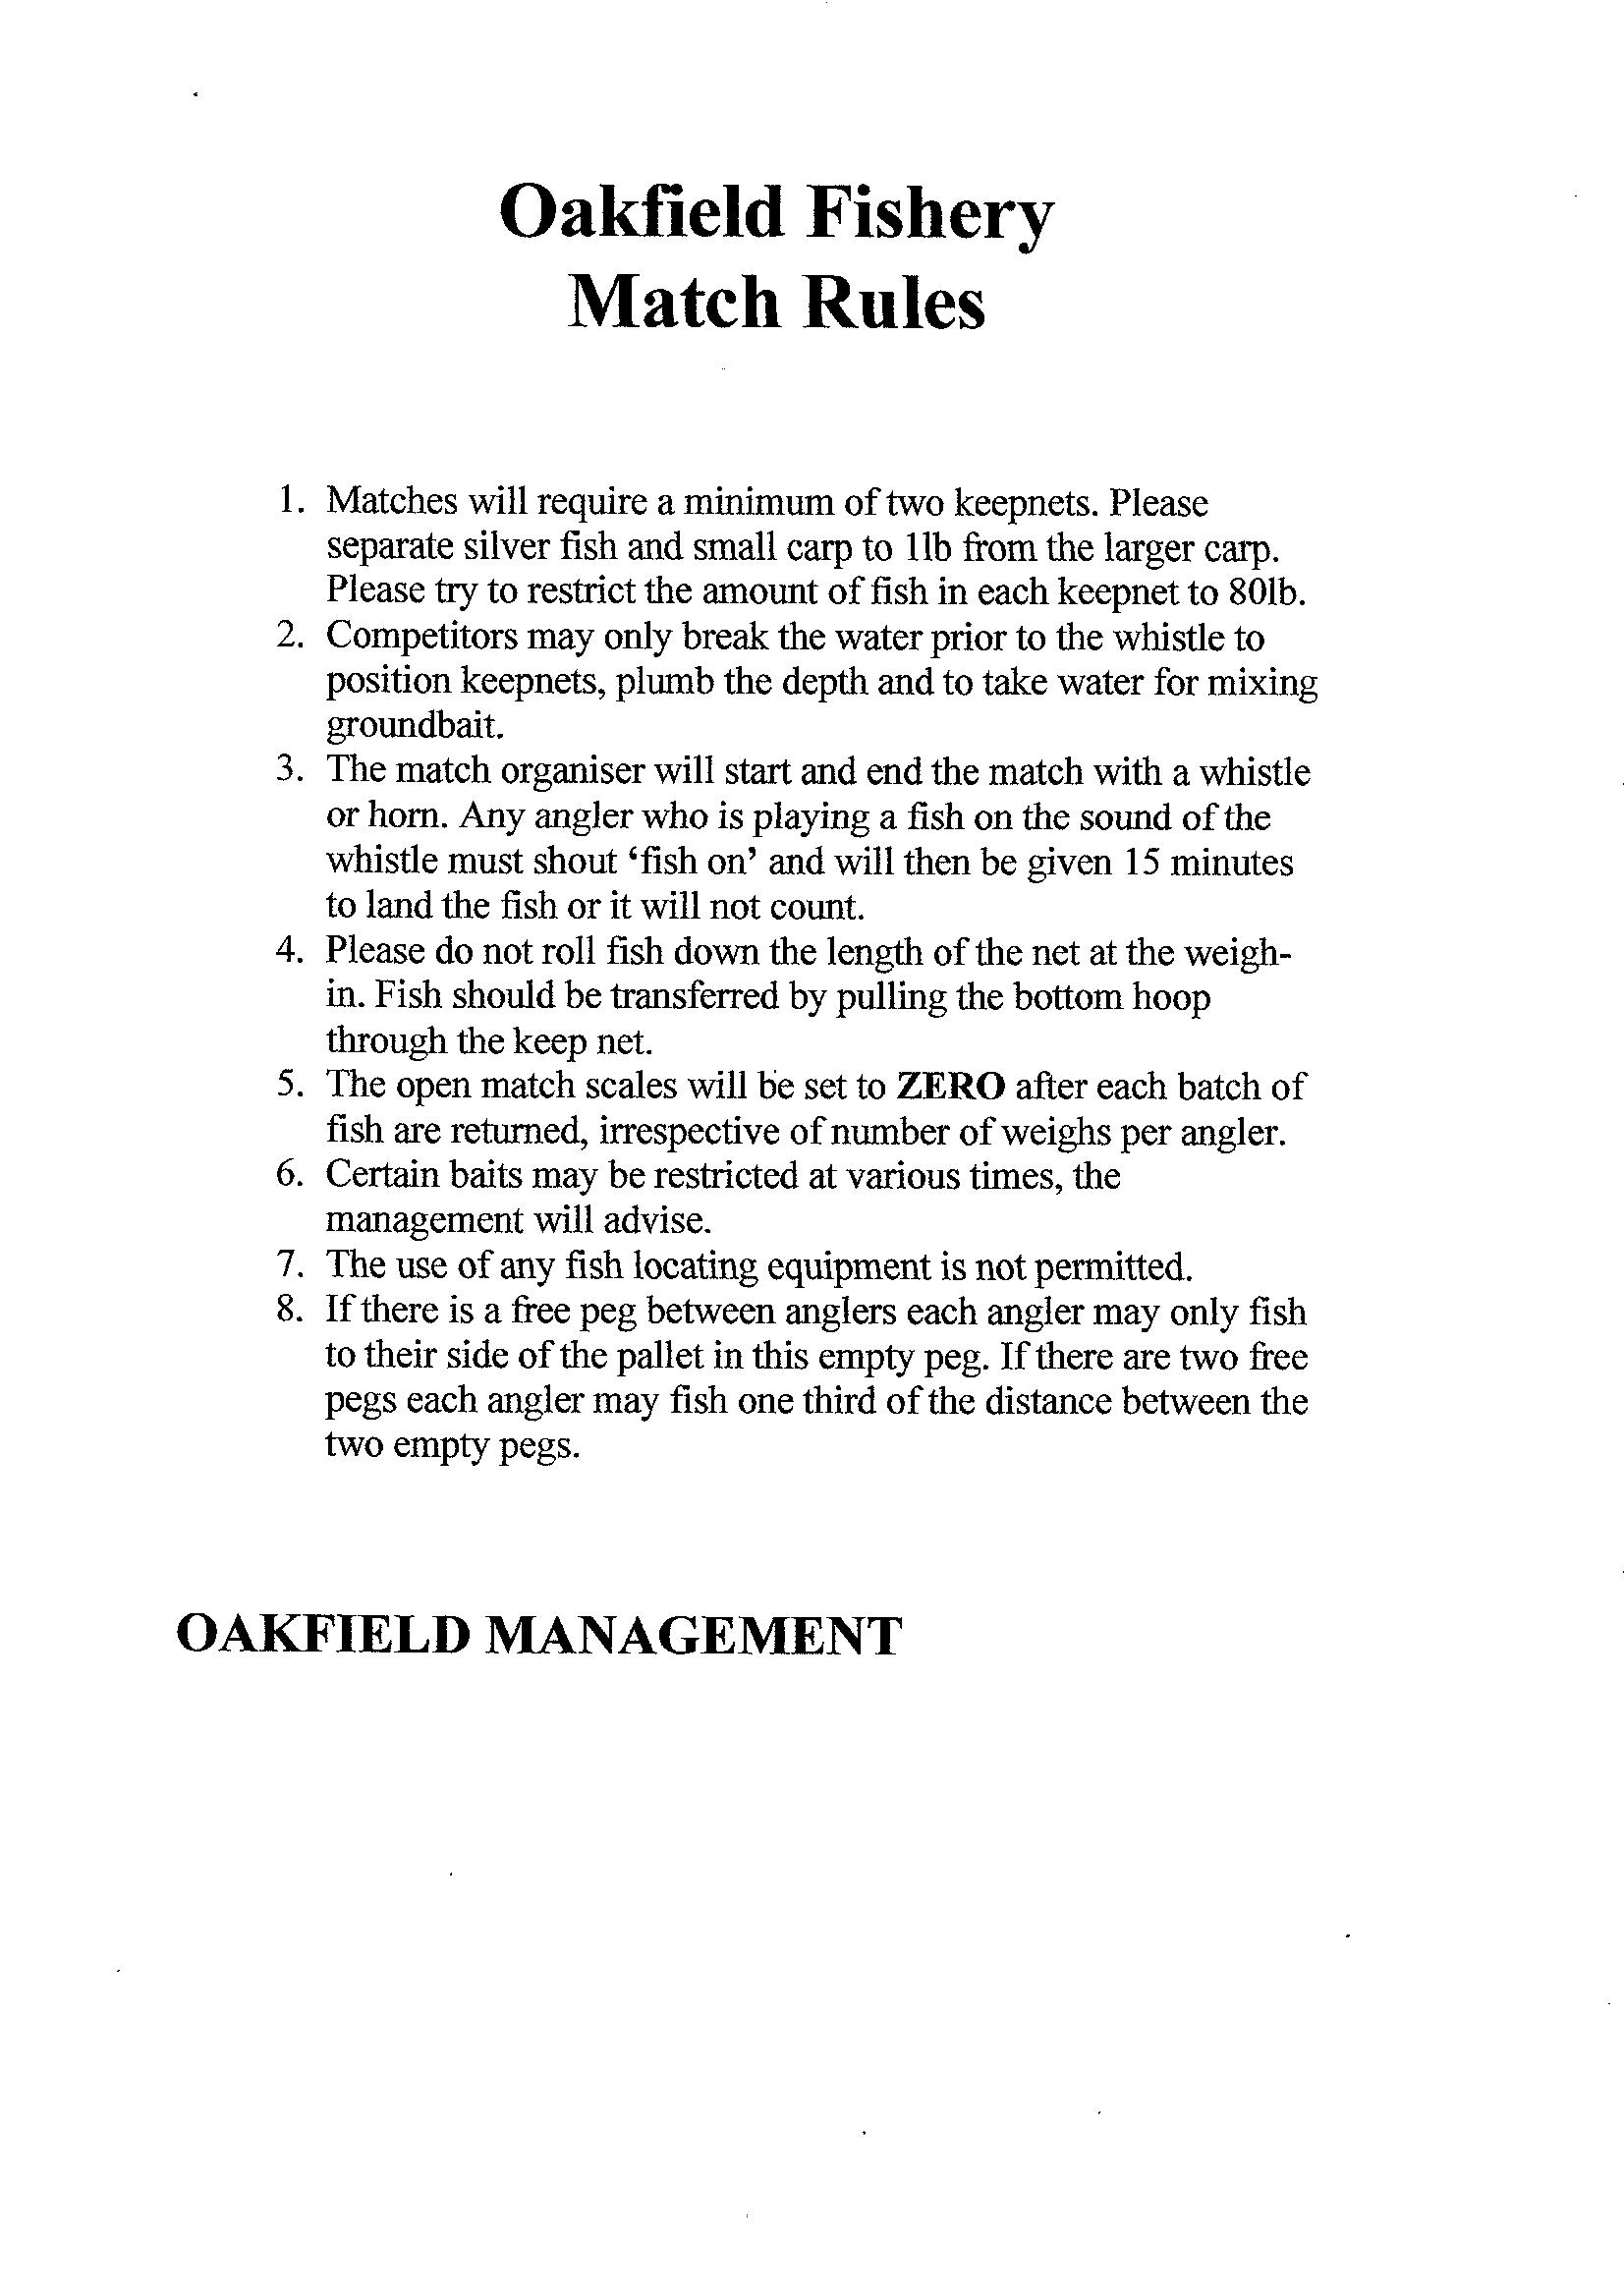 Oakfield Match Rules